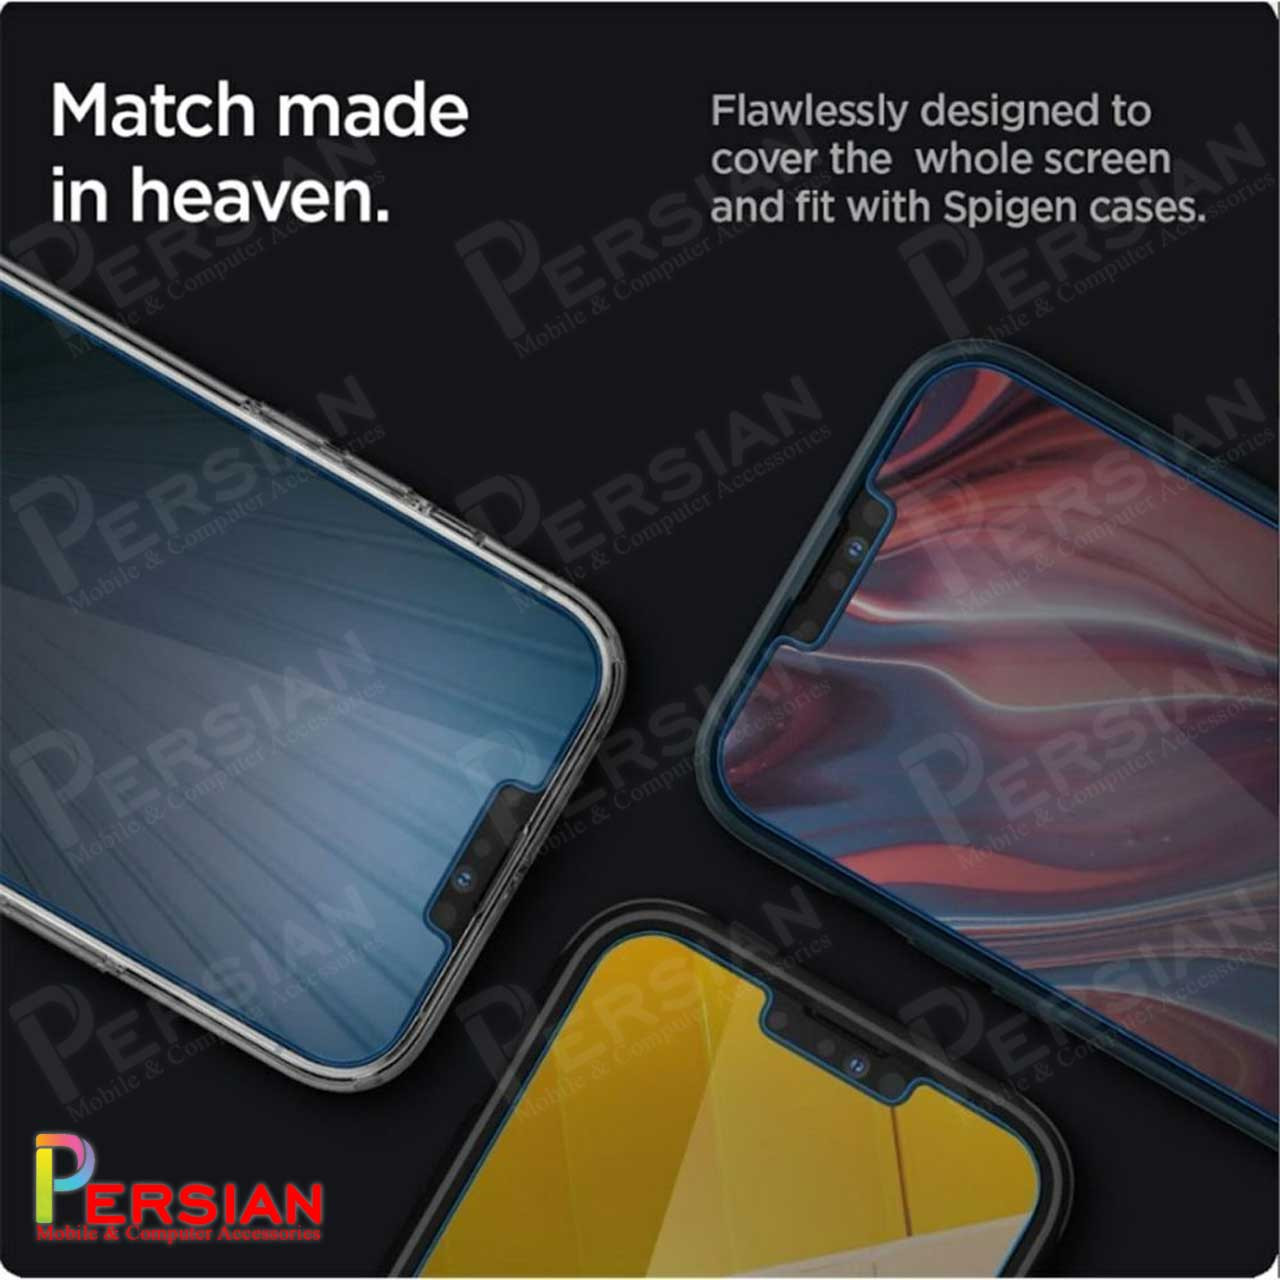 گلس Privacy آیفون 12 برند Spigen مدل Spigen GLASS.TR iPhone 12 Privacy SLIM HD